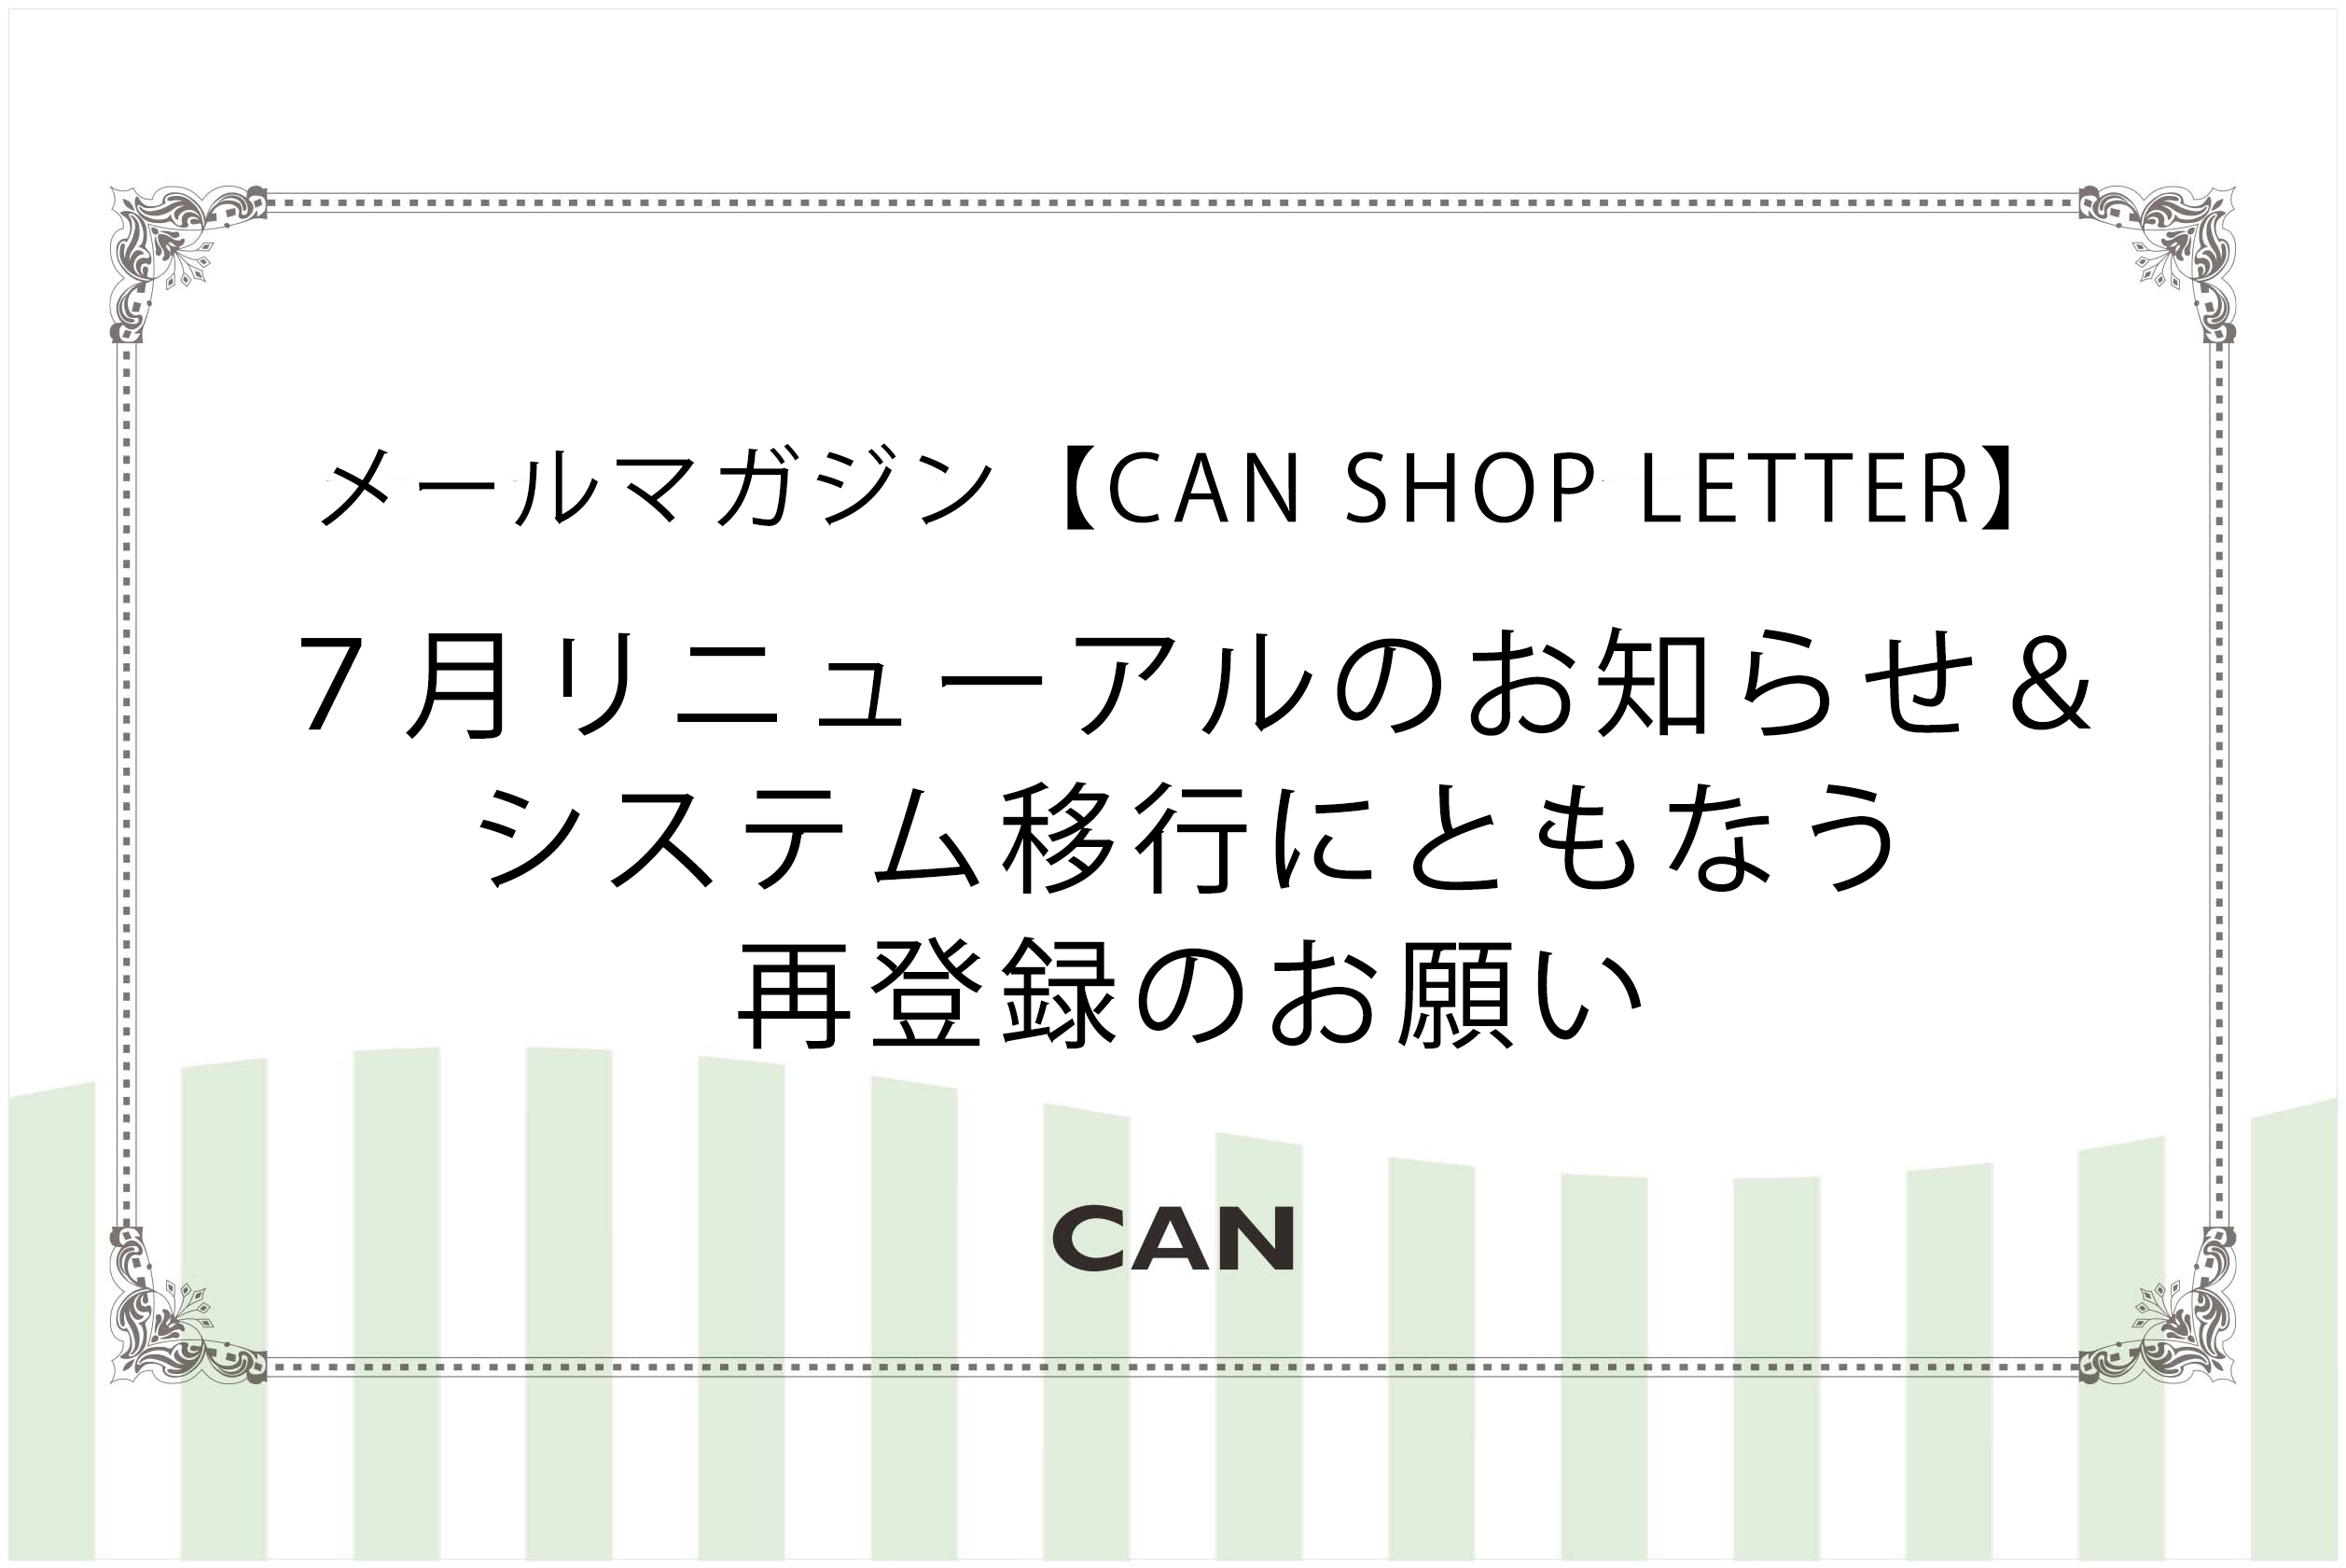 メールマガジン【CAN SHOP LETTER】リニューアルに伴う再登録のお願い